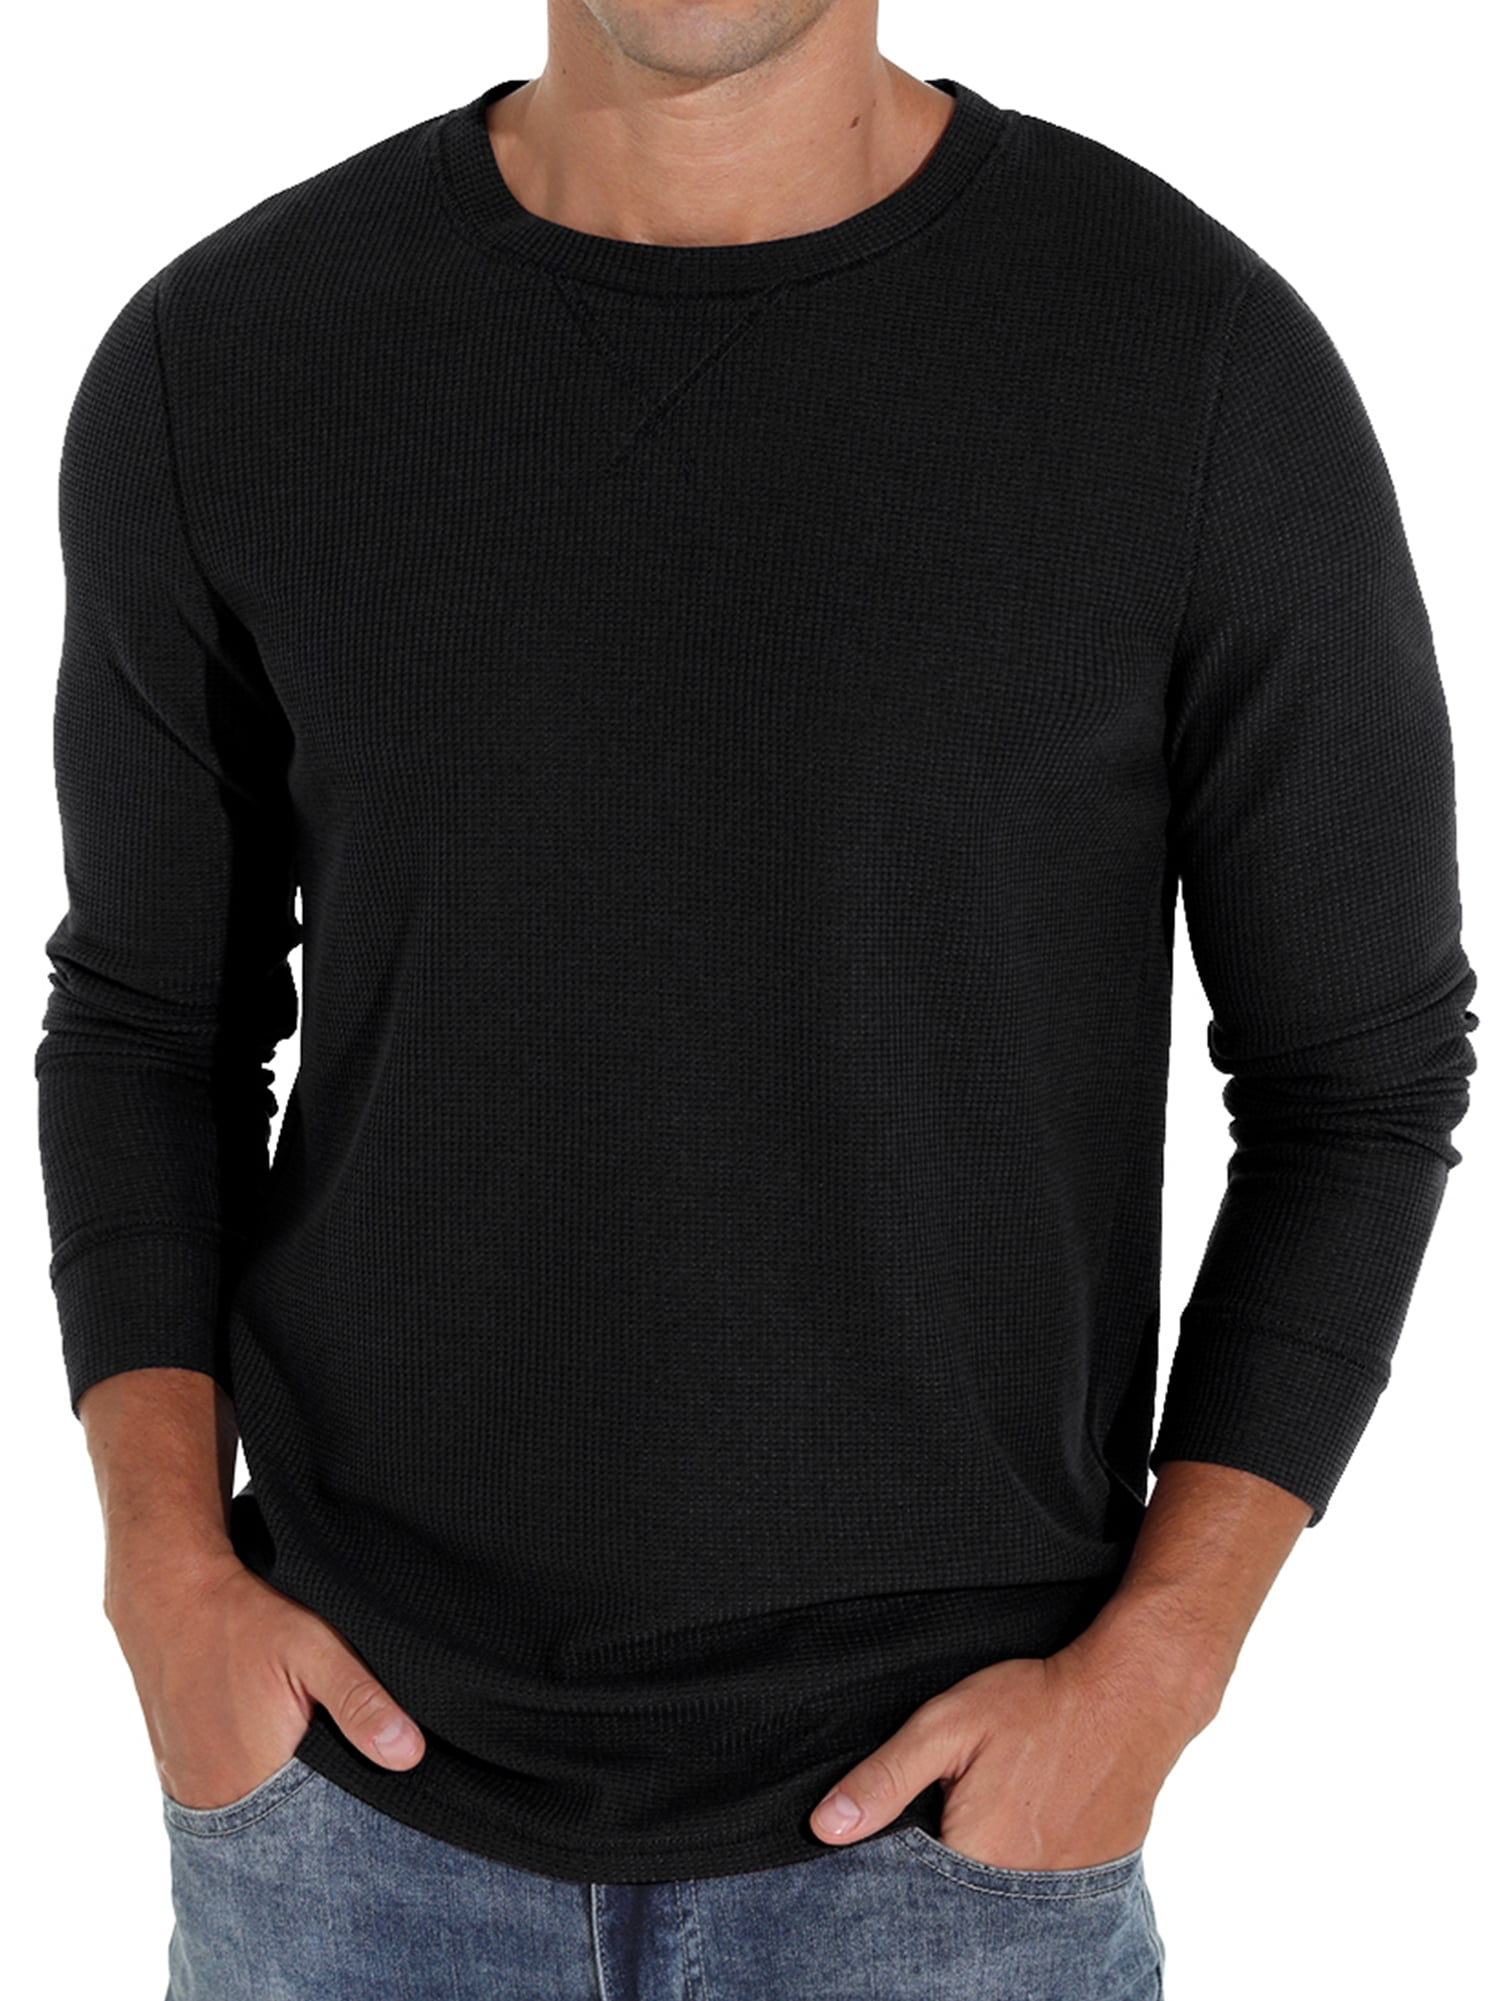 US Size Large Blank Custom T-shirt Heat Transfer Heat Sublimation Short  Sleeve